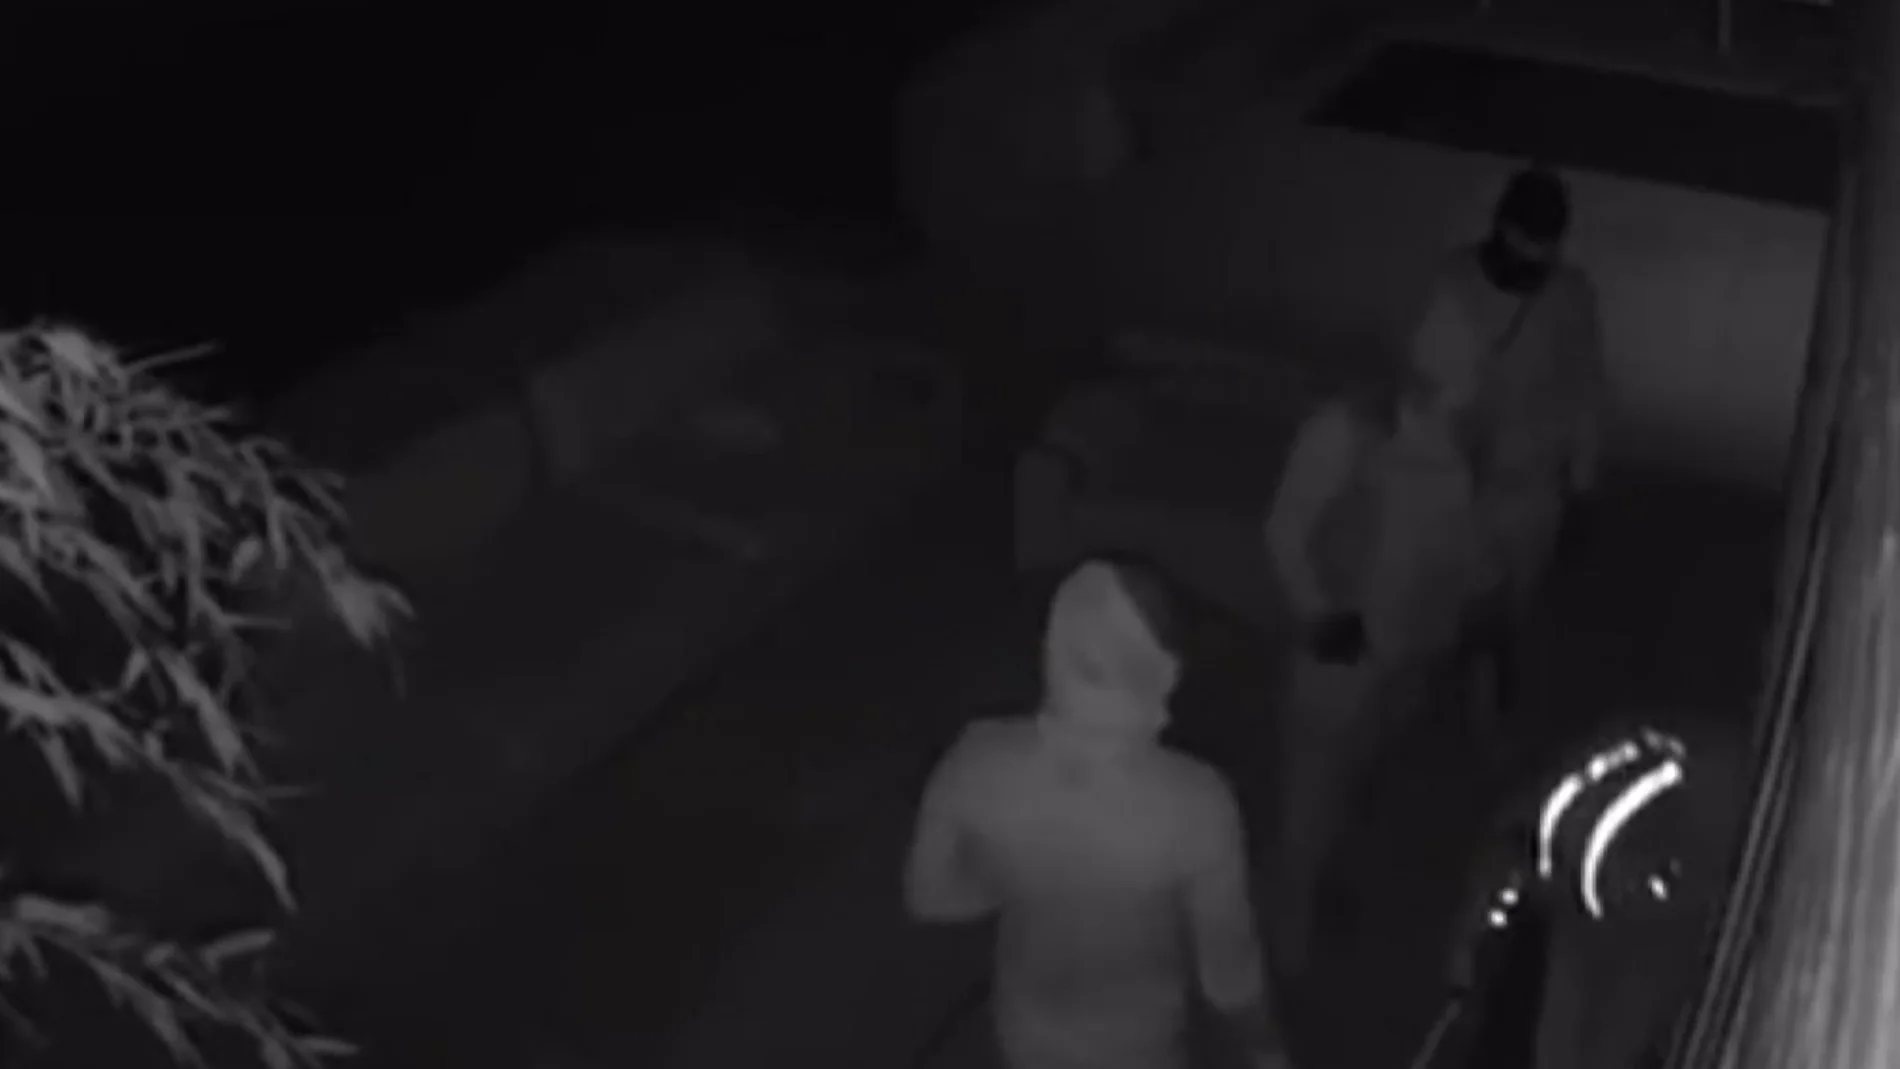 Reece James publica un vídeo en el que cinco ladrones roban en su casa mientras jugaba un partido